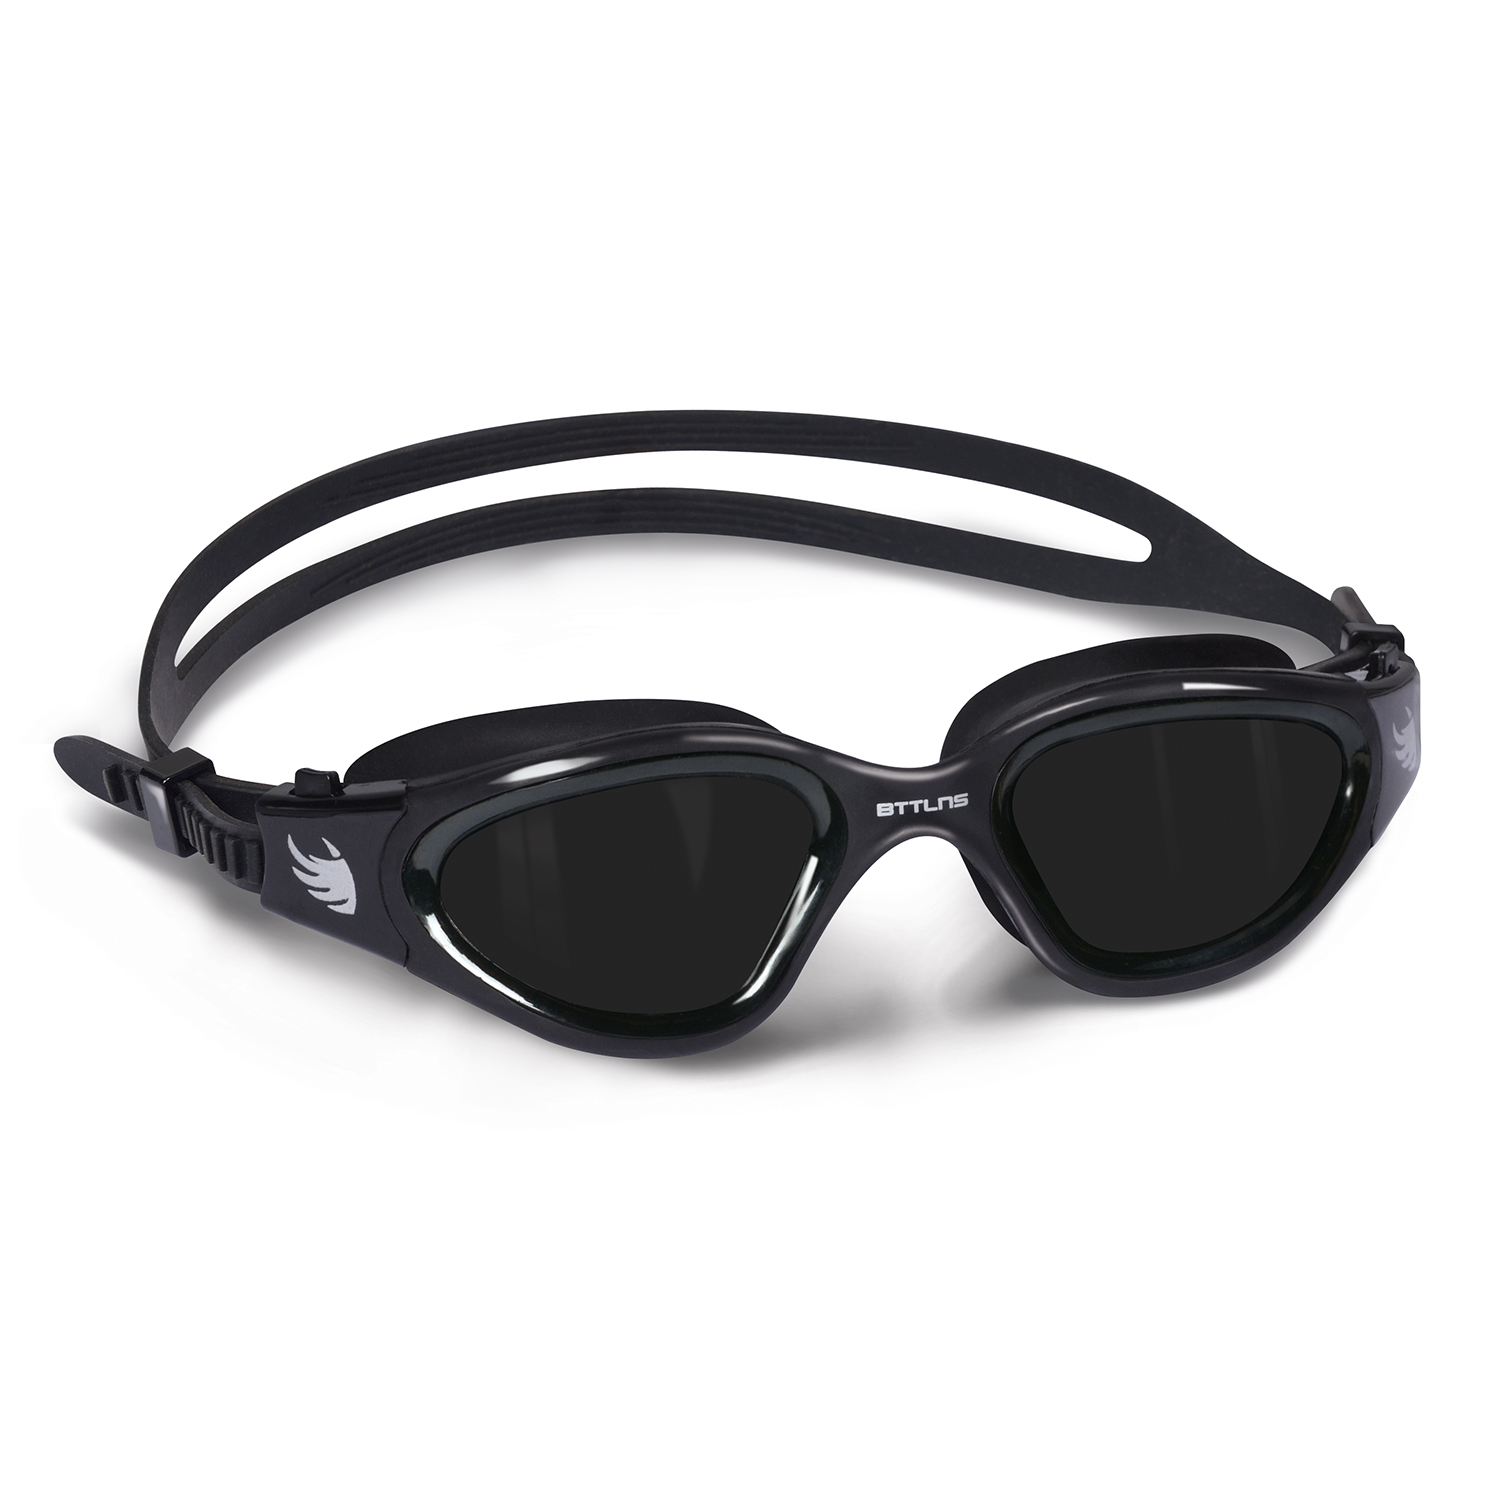 BTTLNS polarized lens goggles black Vermithrax 1.0  0119003-010